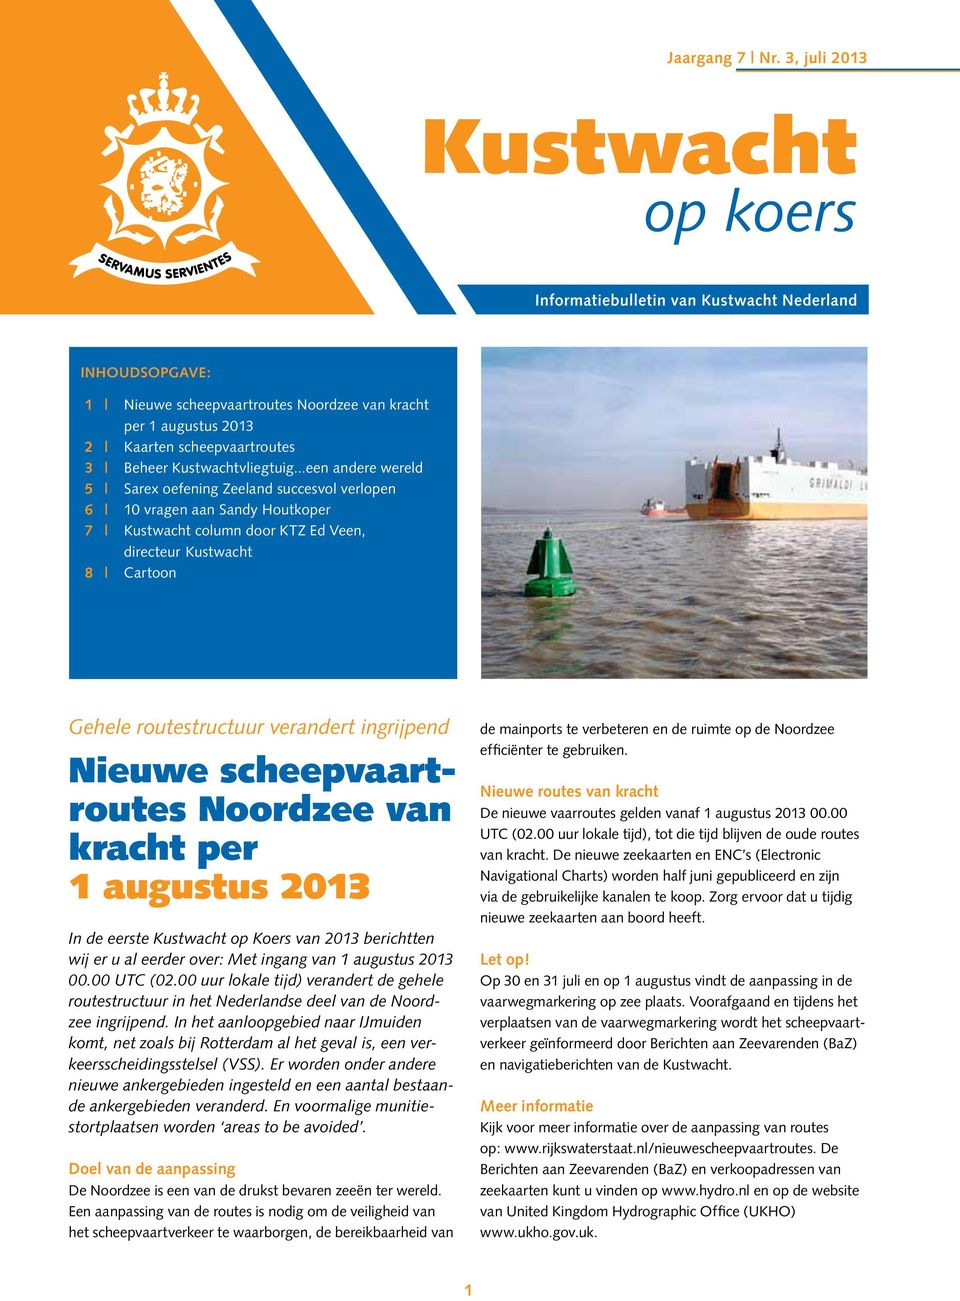 ingrijpend Nieuwe scheepvaartroutes Noordzee van kracht per 1 augustus 2013 In de eerste Kustwacht op Koers van 2013 berichtten wij er u al eerder over: Met ingang van 1 augustus 2013 00.00 UTC (02.